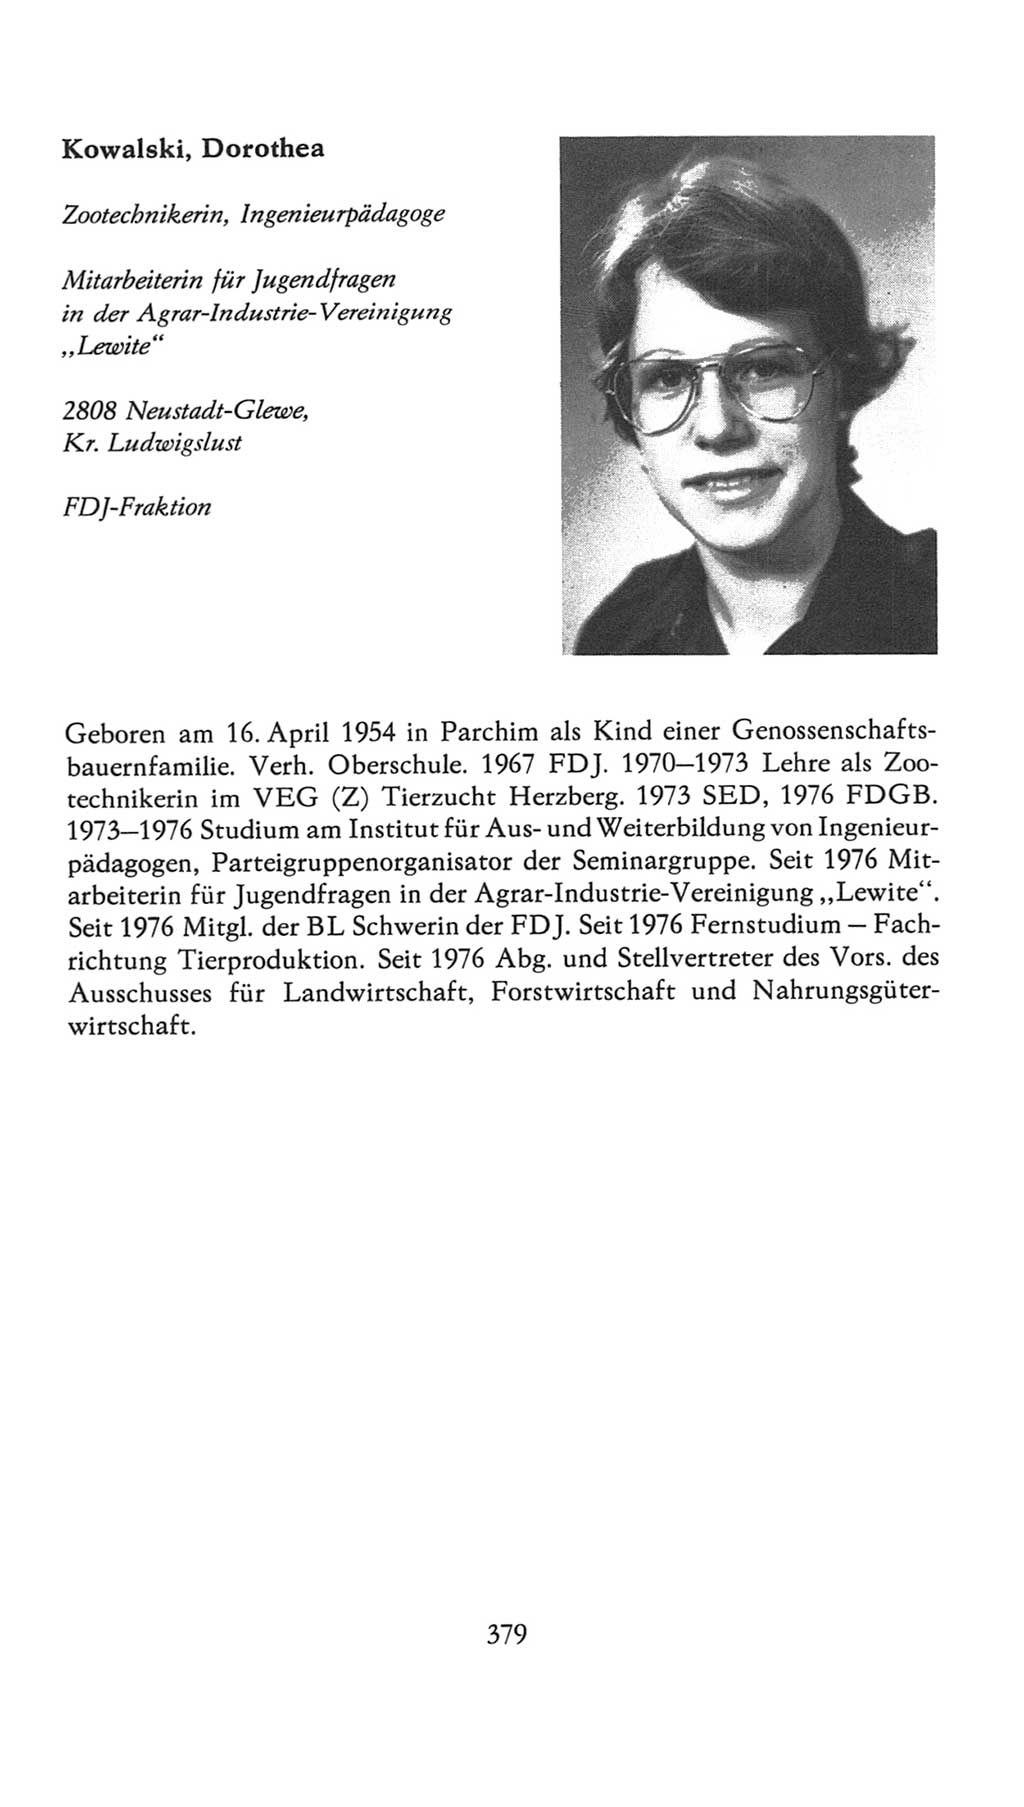 Volkskammer (VK) der Deutschen Demokratischen Republik (DDR), 7. Wahlperiode 1976-1981, Seite 379 (VK. DDR 7. WP. 1976-1981, S. 379)